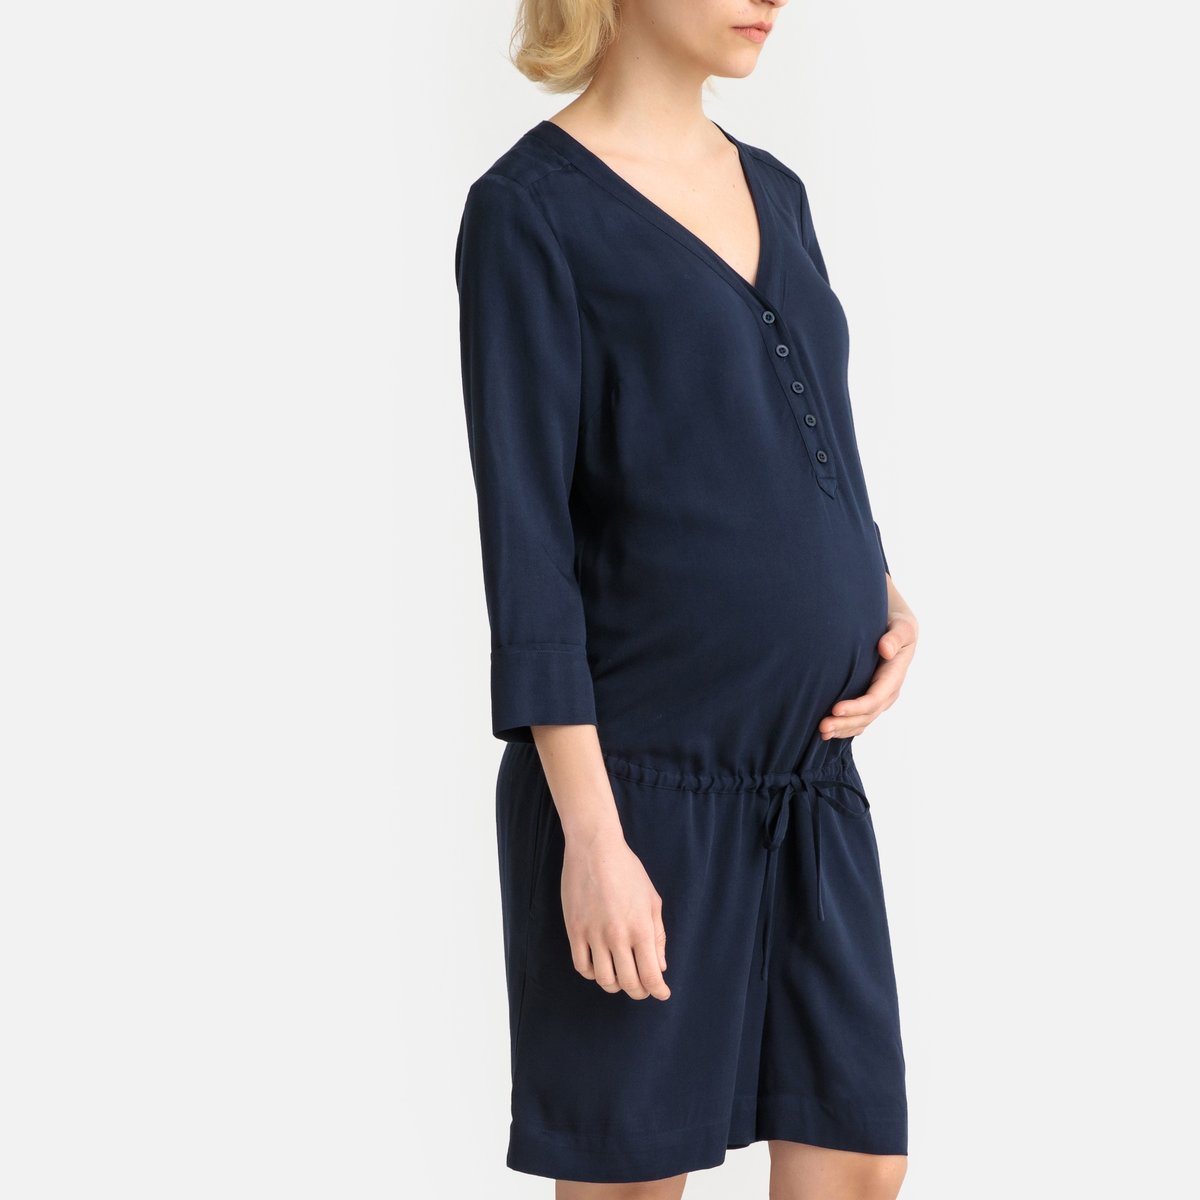 Комбинезон La Redoute С шортами для периода беременности 38 (FR) - 44 (RUS) синий, размер 38 (FR) - 44 (RUS) С шортами для периода беременности 38 (FR) - 44 (RUS) синий - фото 1